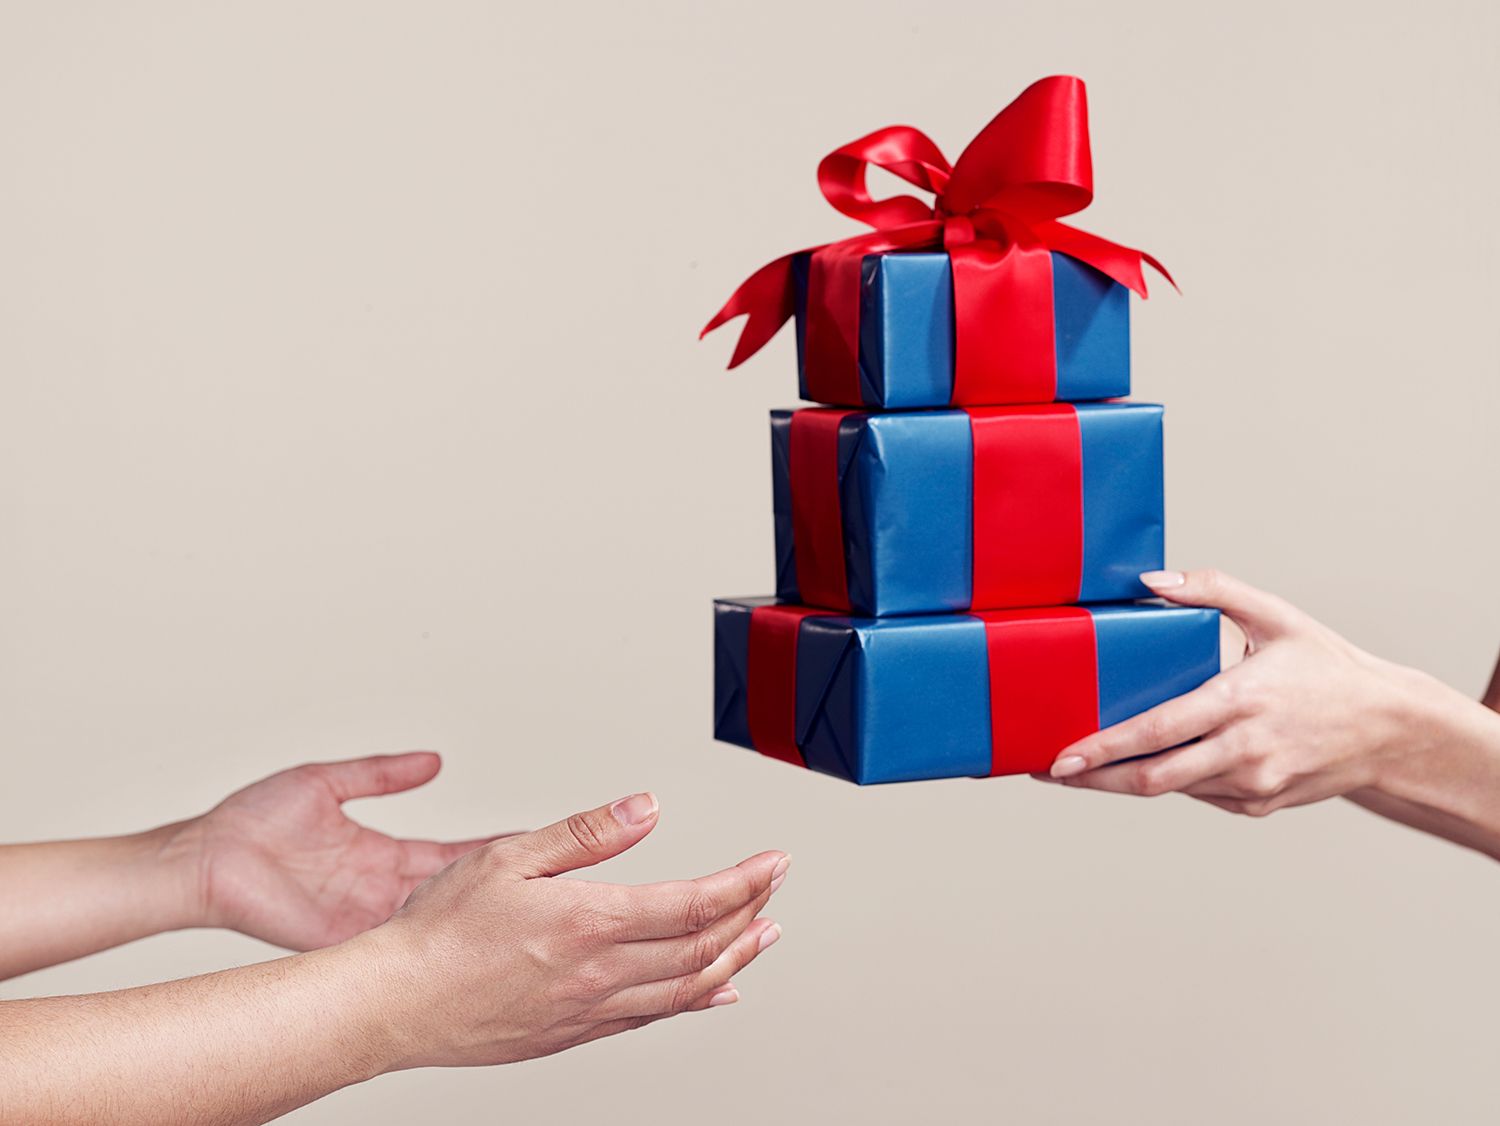 Właściwy sposób radzenia sobie z prezentami, których nie chcesz